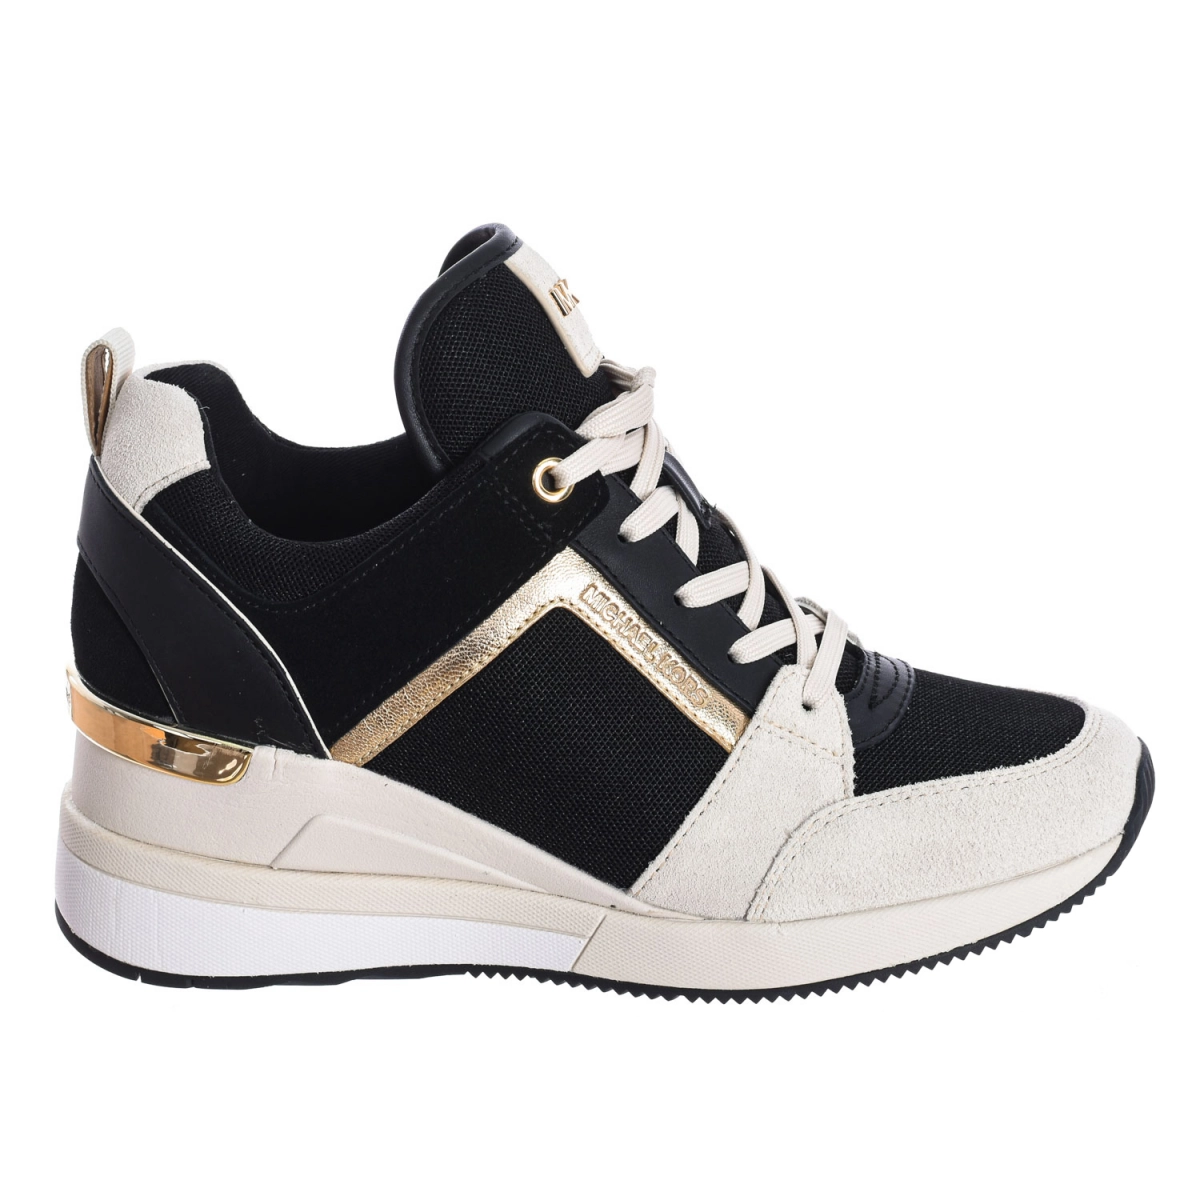 Zapatilla Sneaker Georgie tricolor Michael Kors R9GEFS1S mujer Talla: 40 Color: Negro R9GEFS1S-LT-CRM-MULTI.40